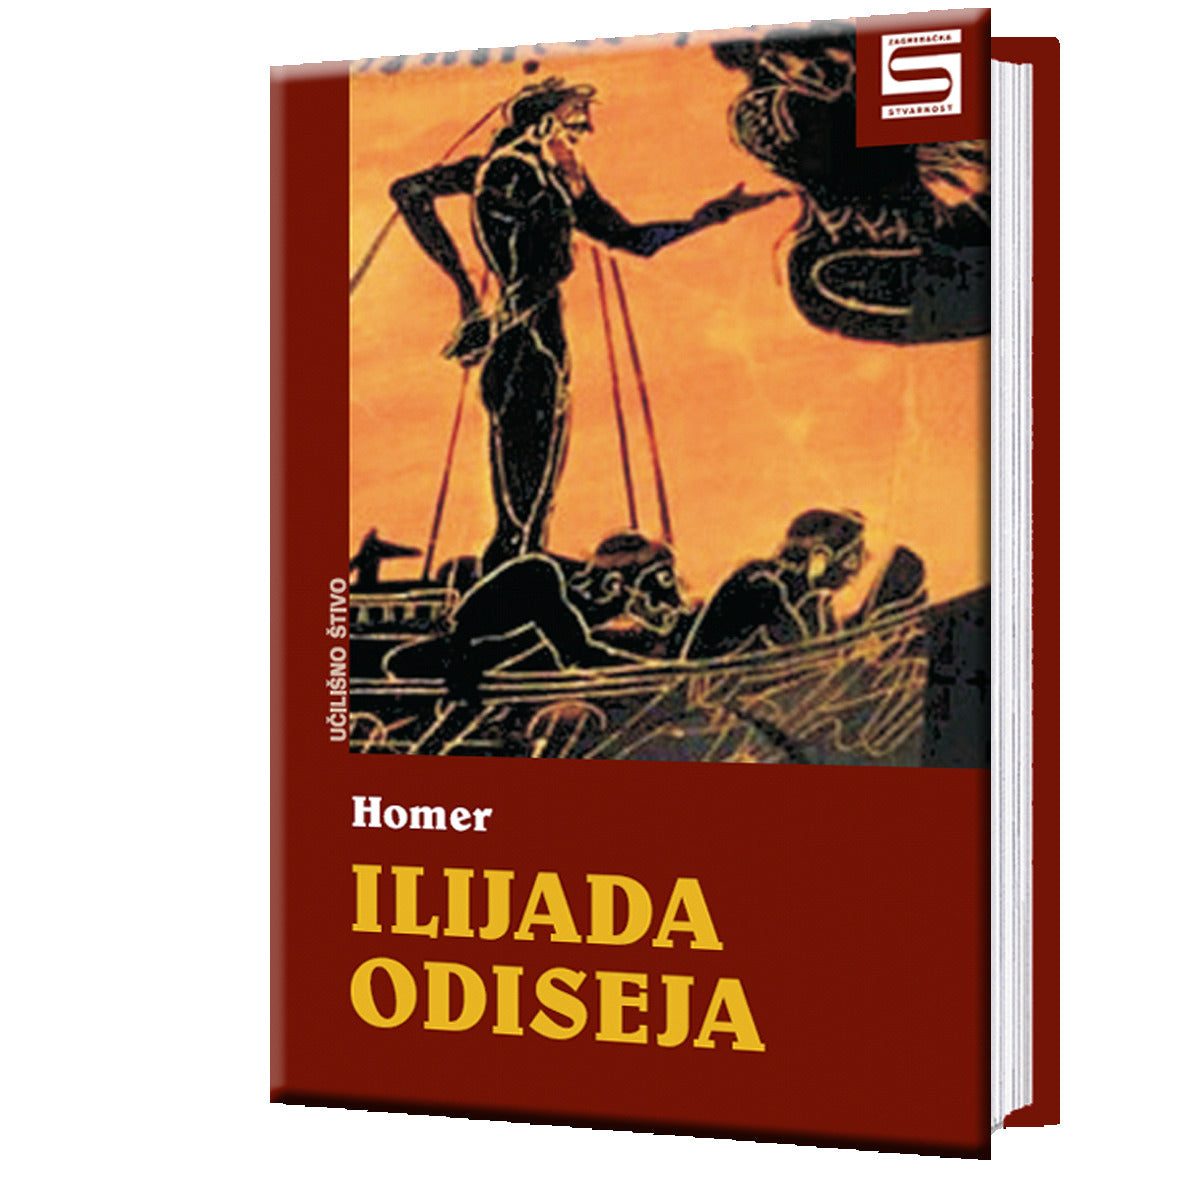 Ilijada, Odiseja - Homer